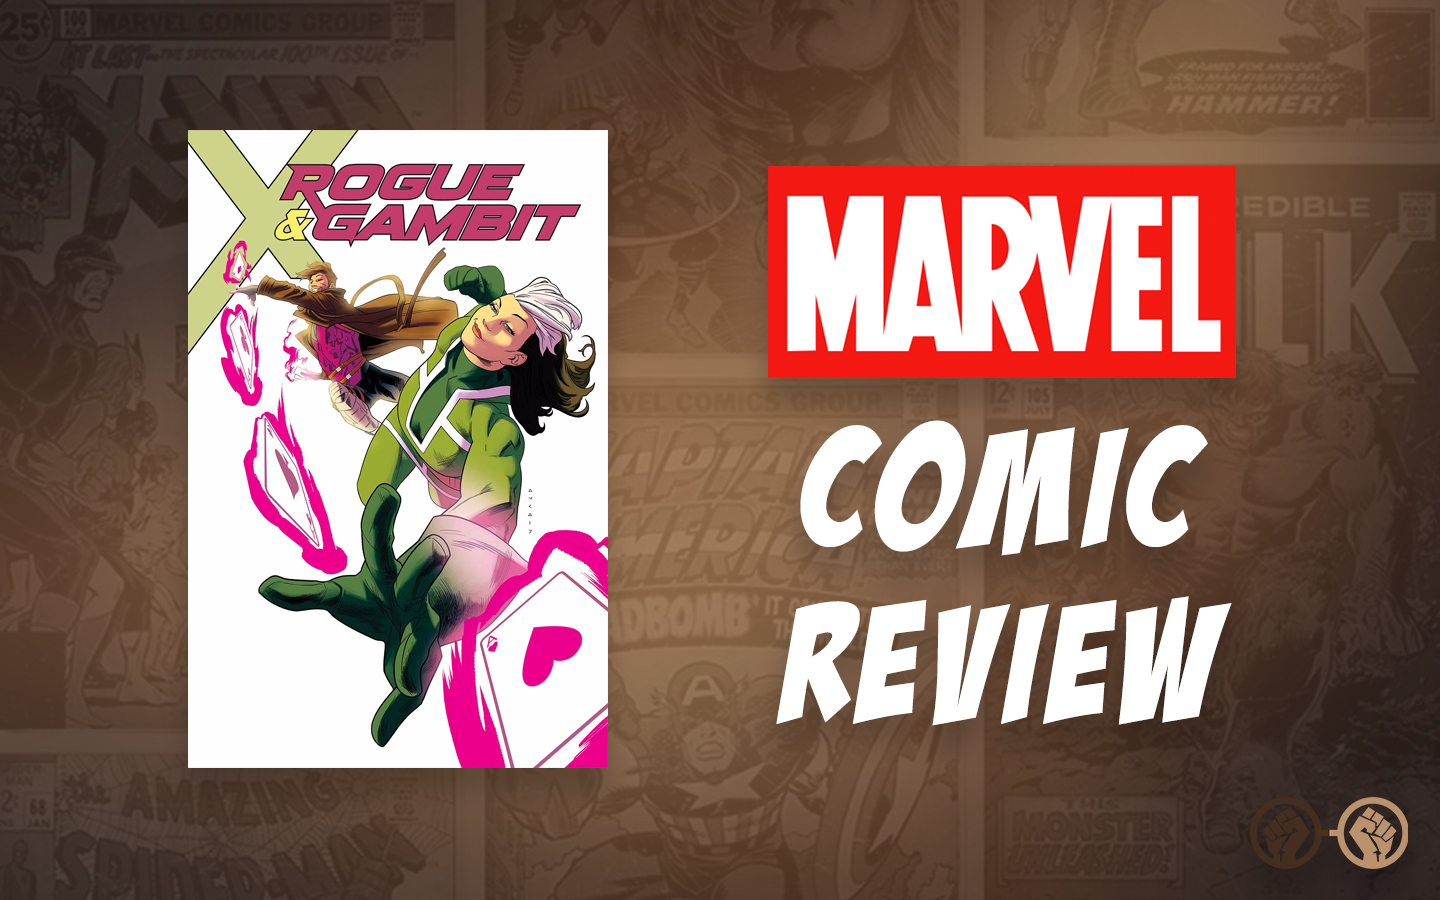 GOC Comic Review: Rogue & Gambit #1